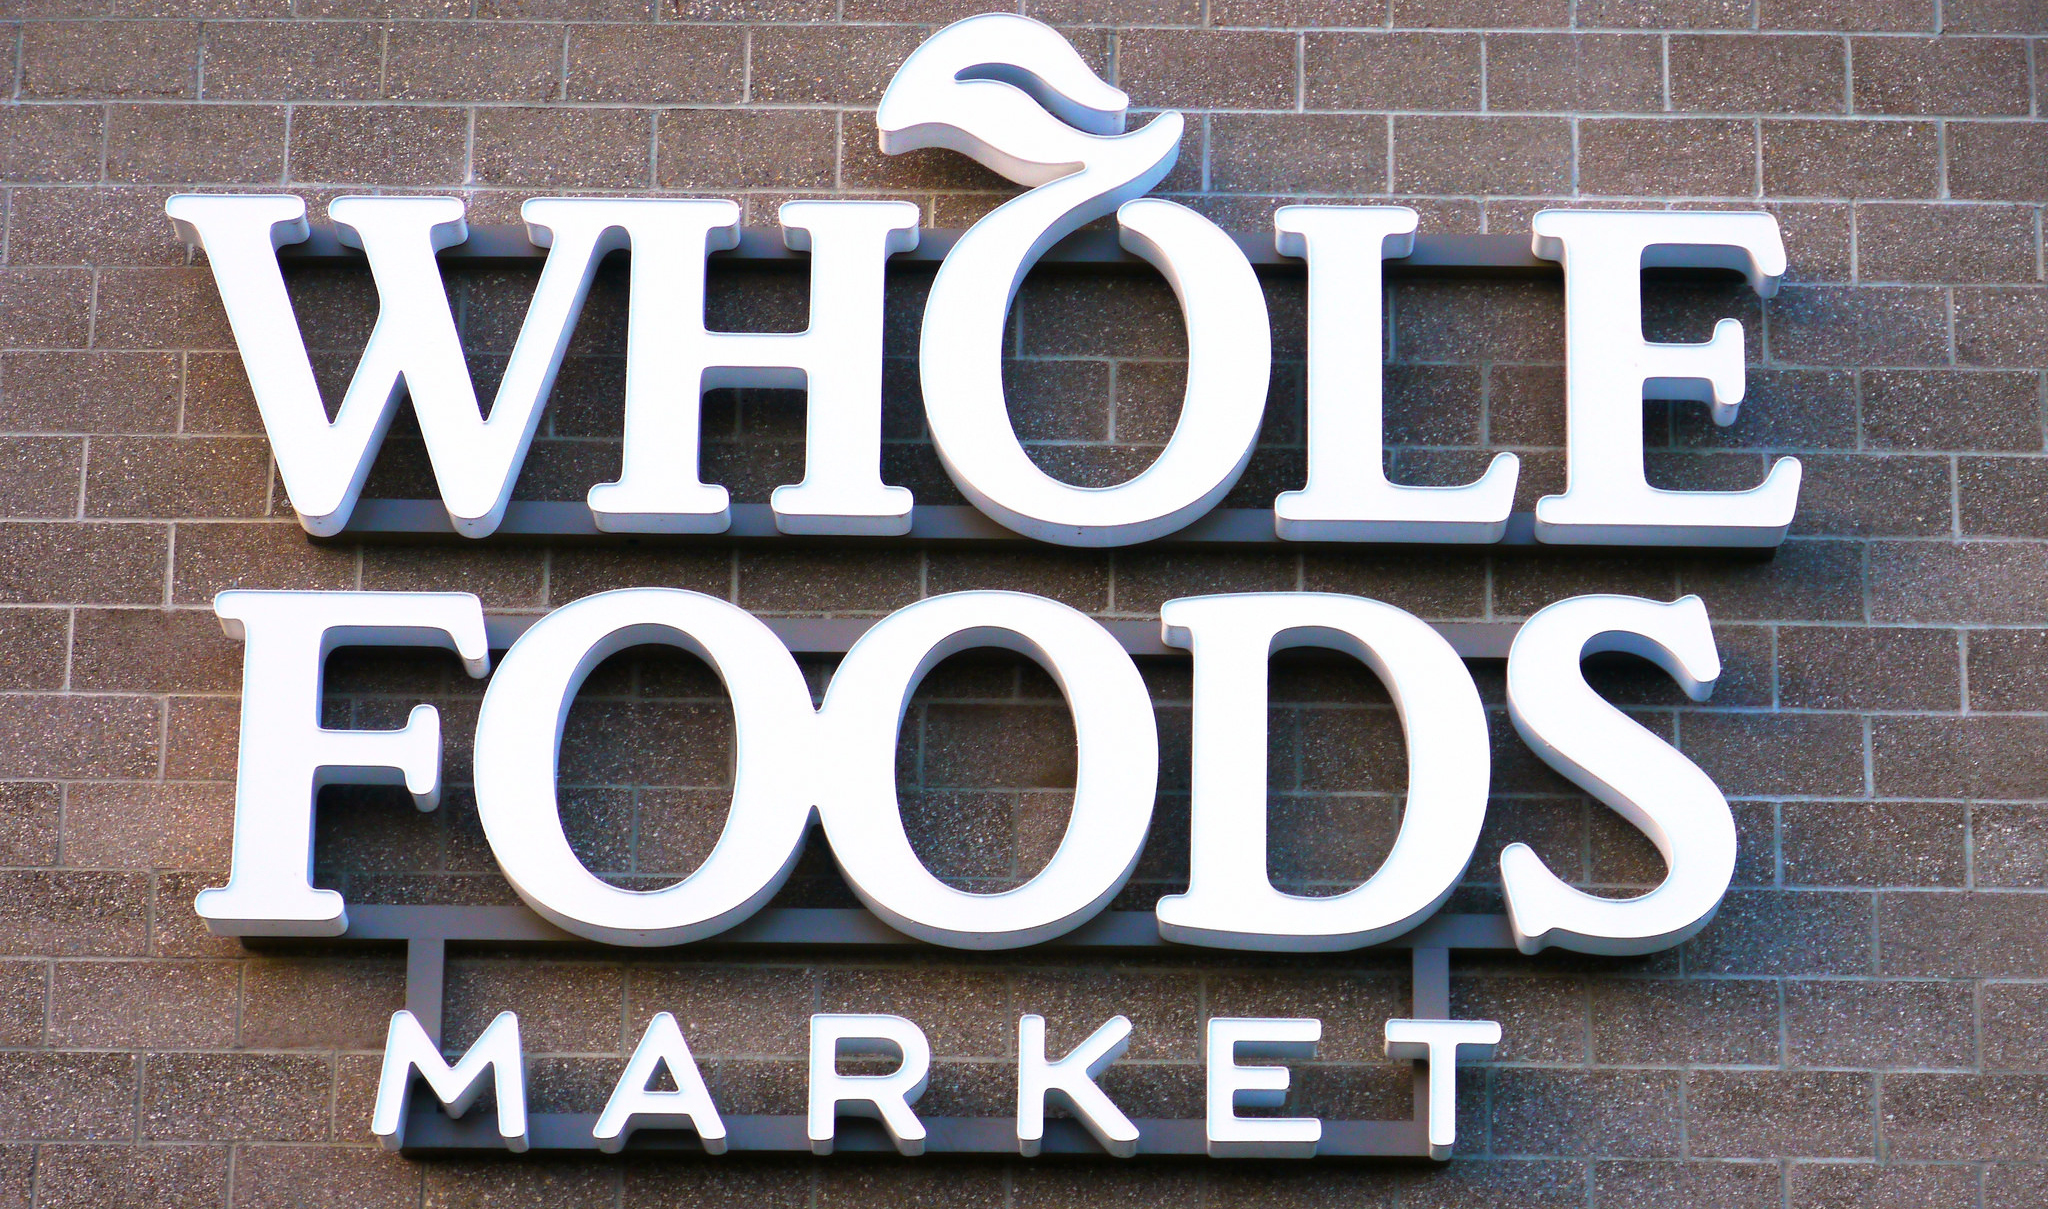 Amazons oppkjøp av Whole Foods Market plasserer dem i en helt annen liga i dagligvaremarkedet, med 431 butikker og omsetning på 136 millliarder kroner.